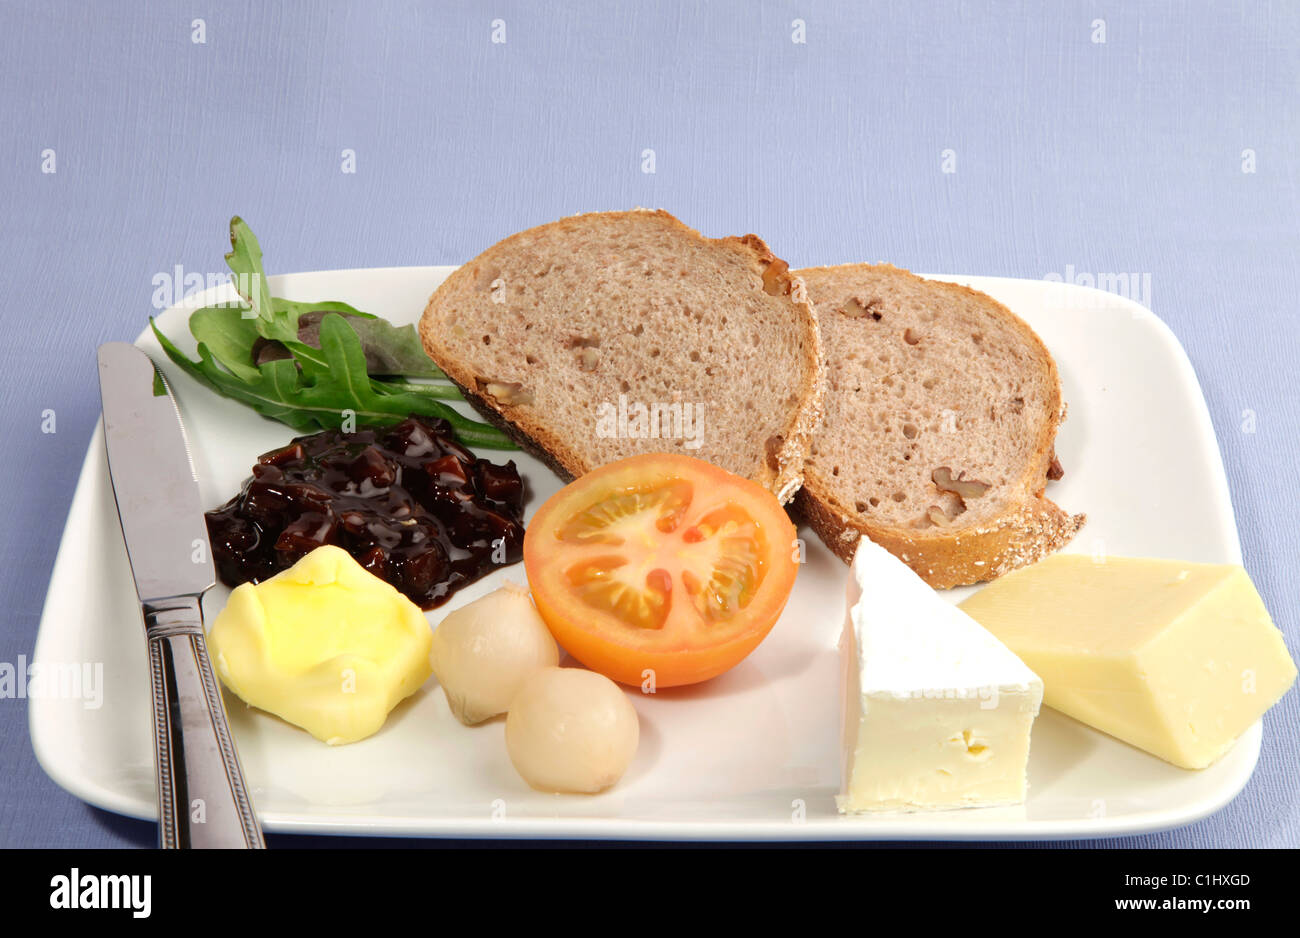 Plowmans almuerzo servido con pan granero fresco y una selección de quesos, tomate fresco, encurtido de cebolla y chutney pickles. Foto de stock